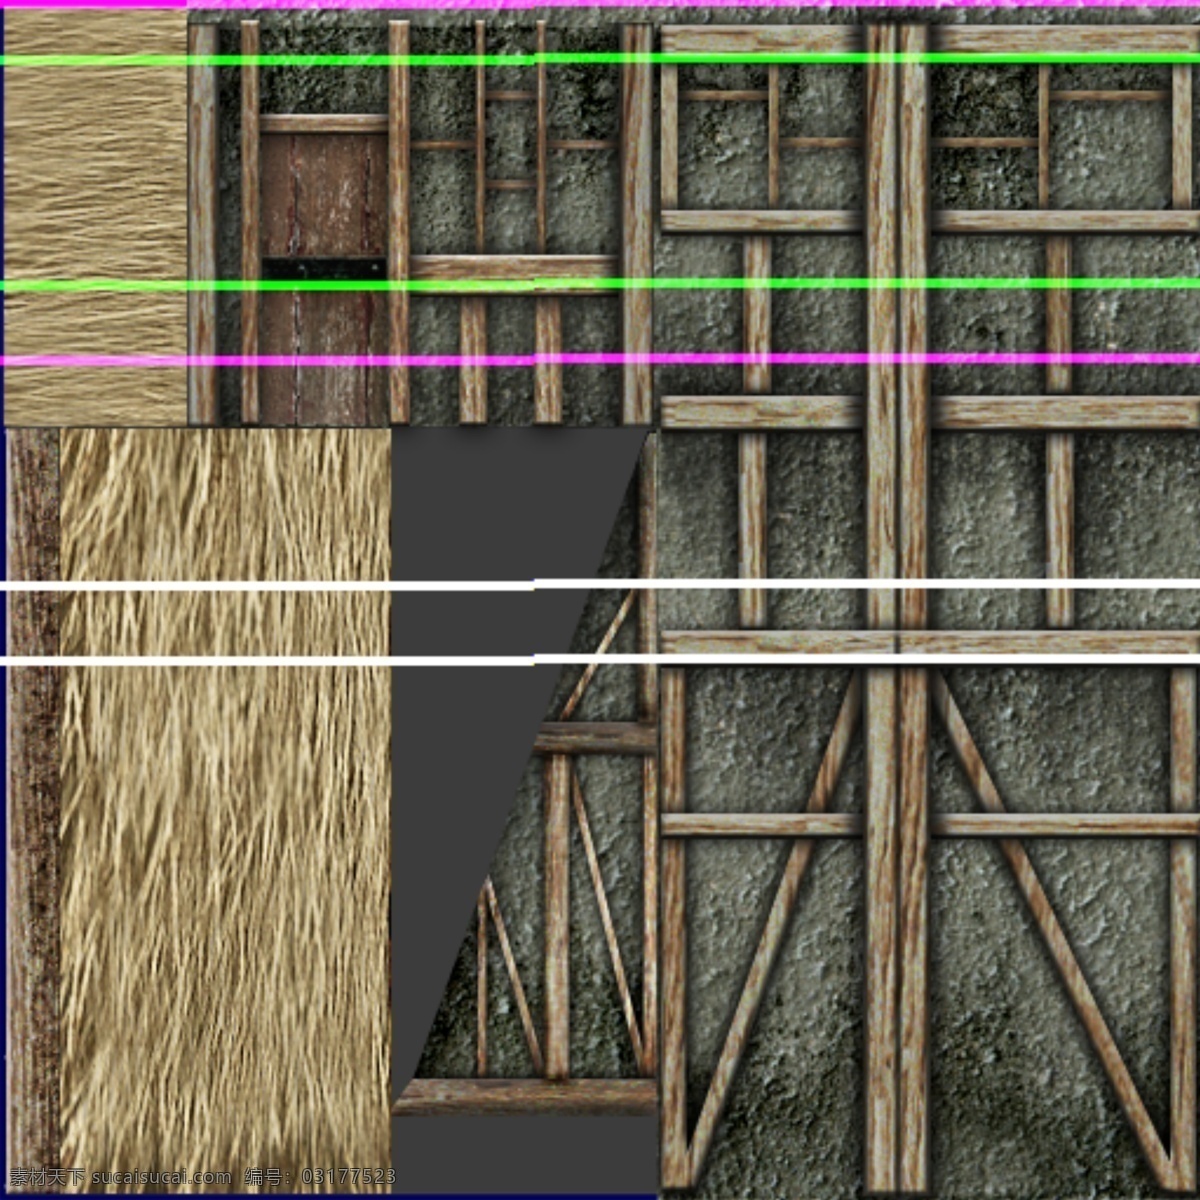 古代建筑 3d设计模型 max 房子 古代 建筑 室外模型 源文件 草房子 有材质 3d模型素材 其他3d模型